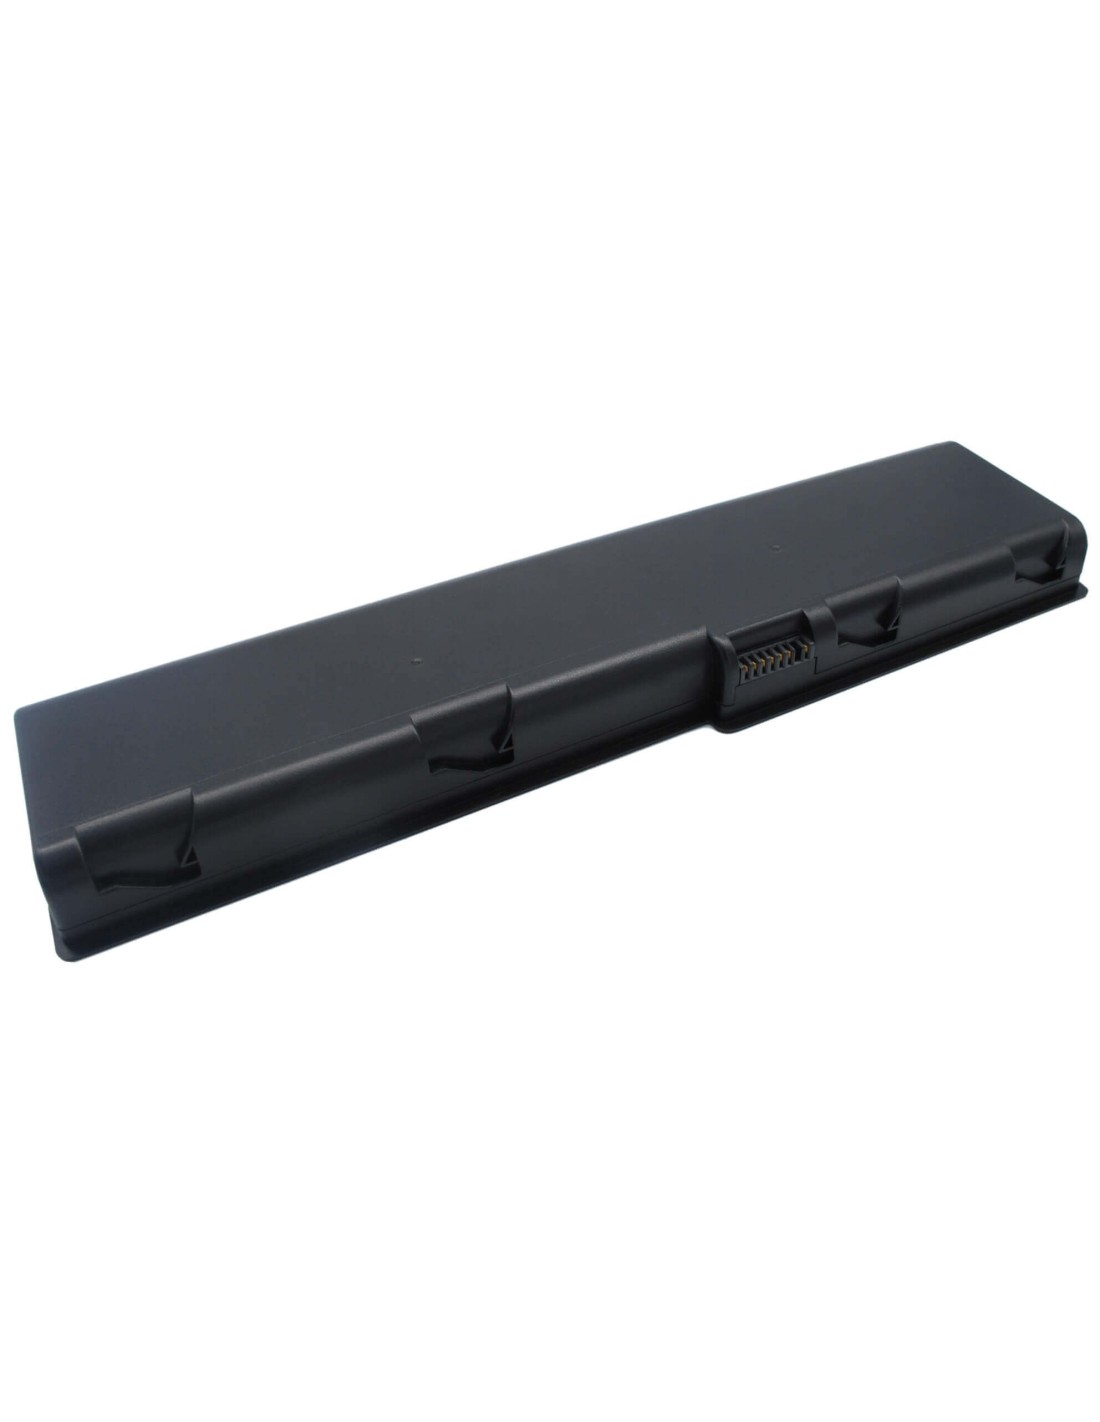 Black Battery for Alphatop G713, G730, G731 14.8V, 6600mAh - 97.68Wh